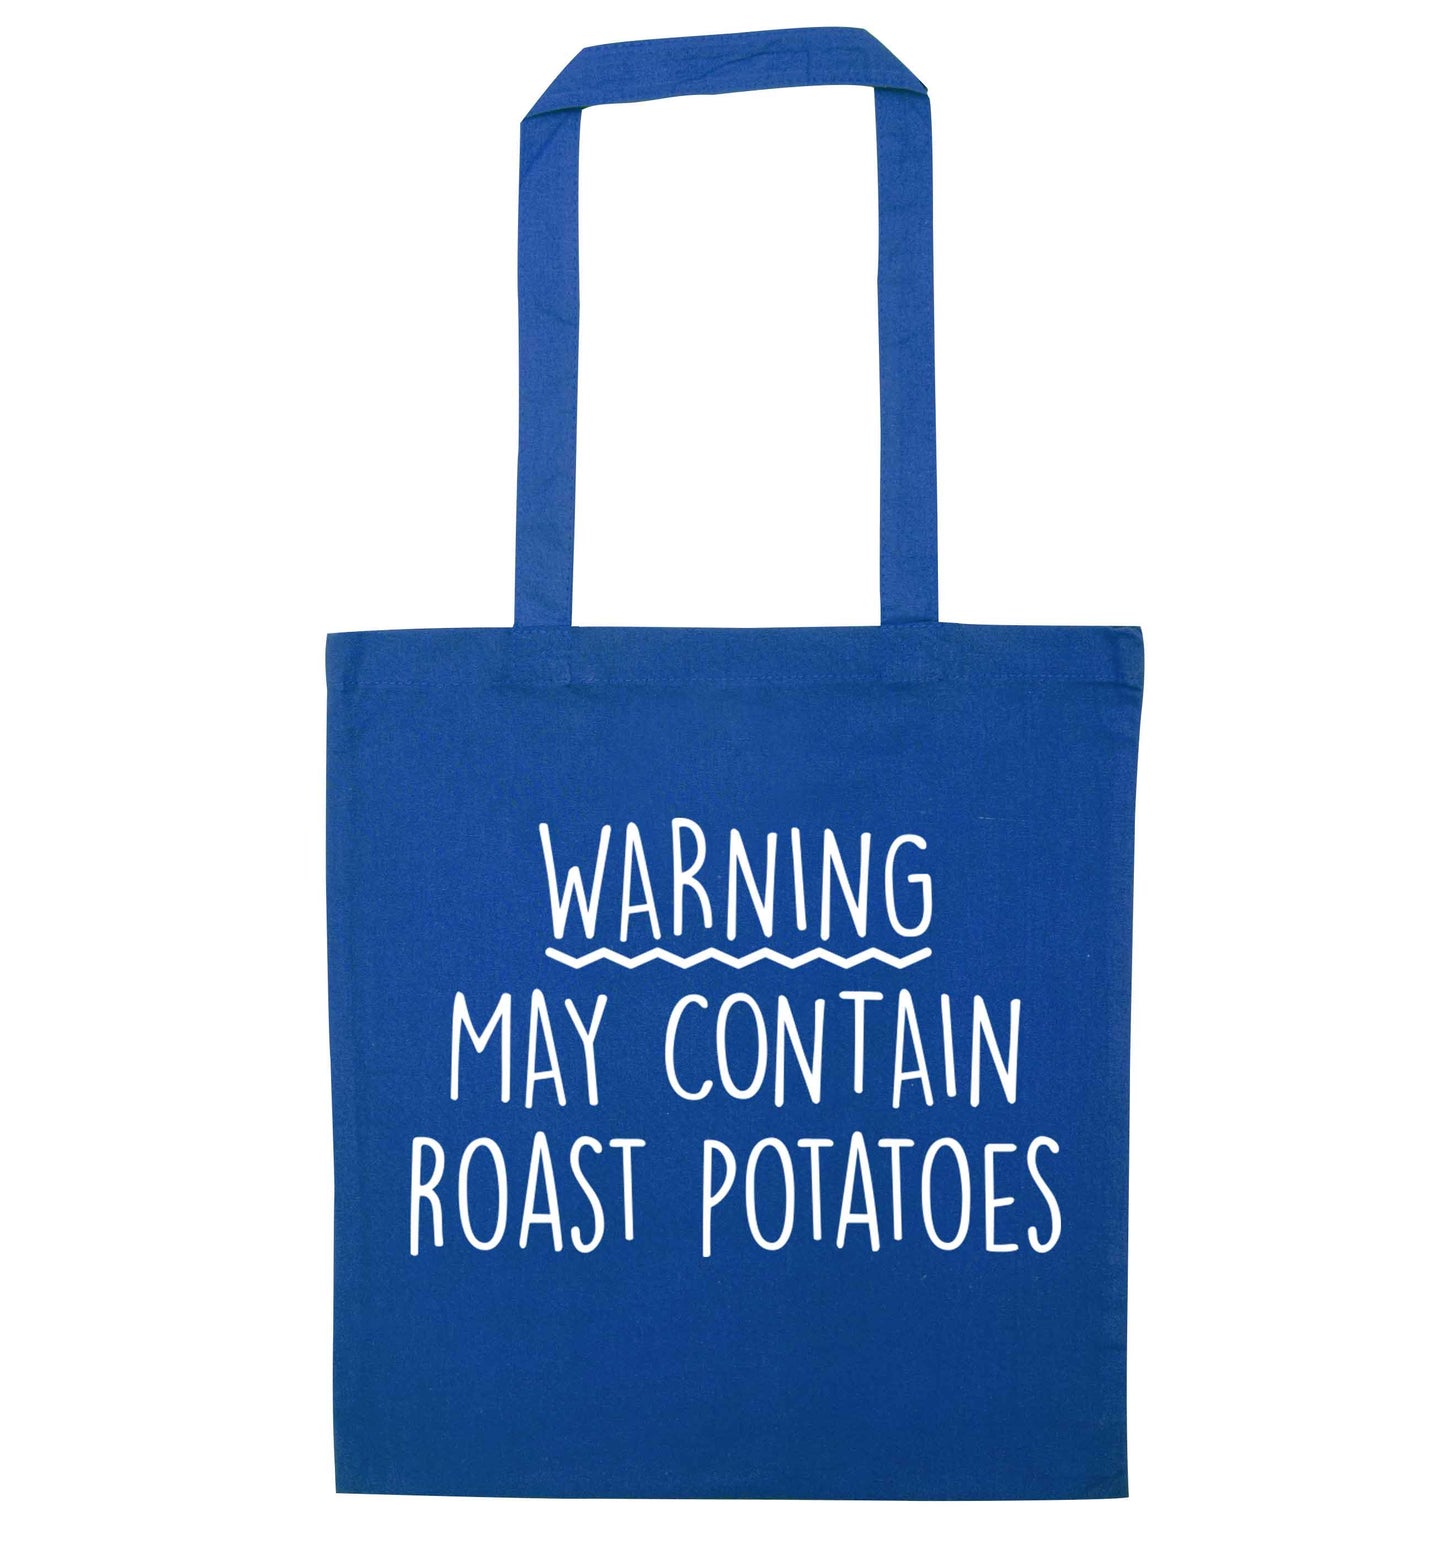 Warning may containg roast potatoes blue tote bag